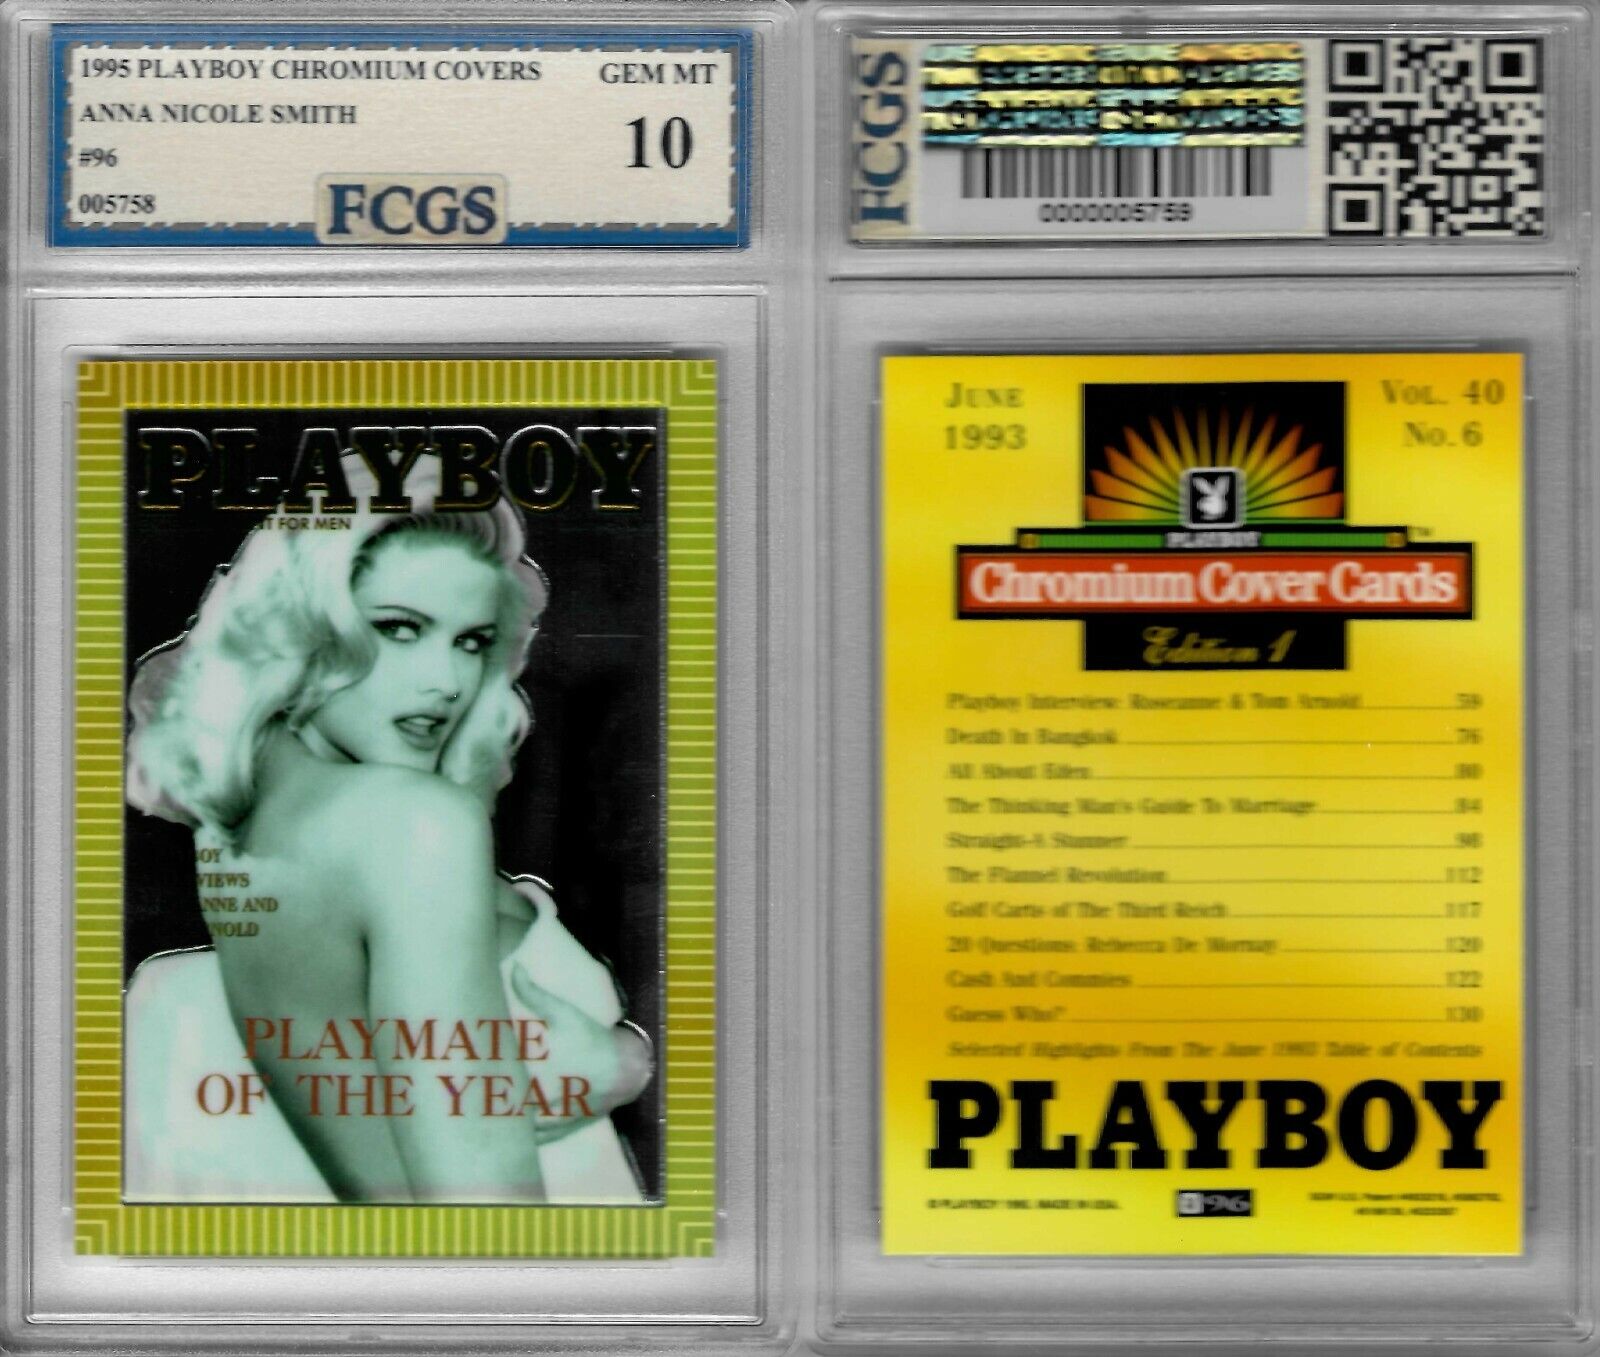 1995 Playboy Chromium Covers Anna Nicole Smith #96 Graded FCGS 10 GEM MINT